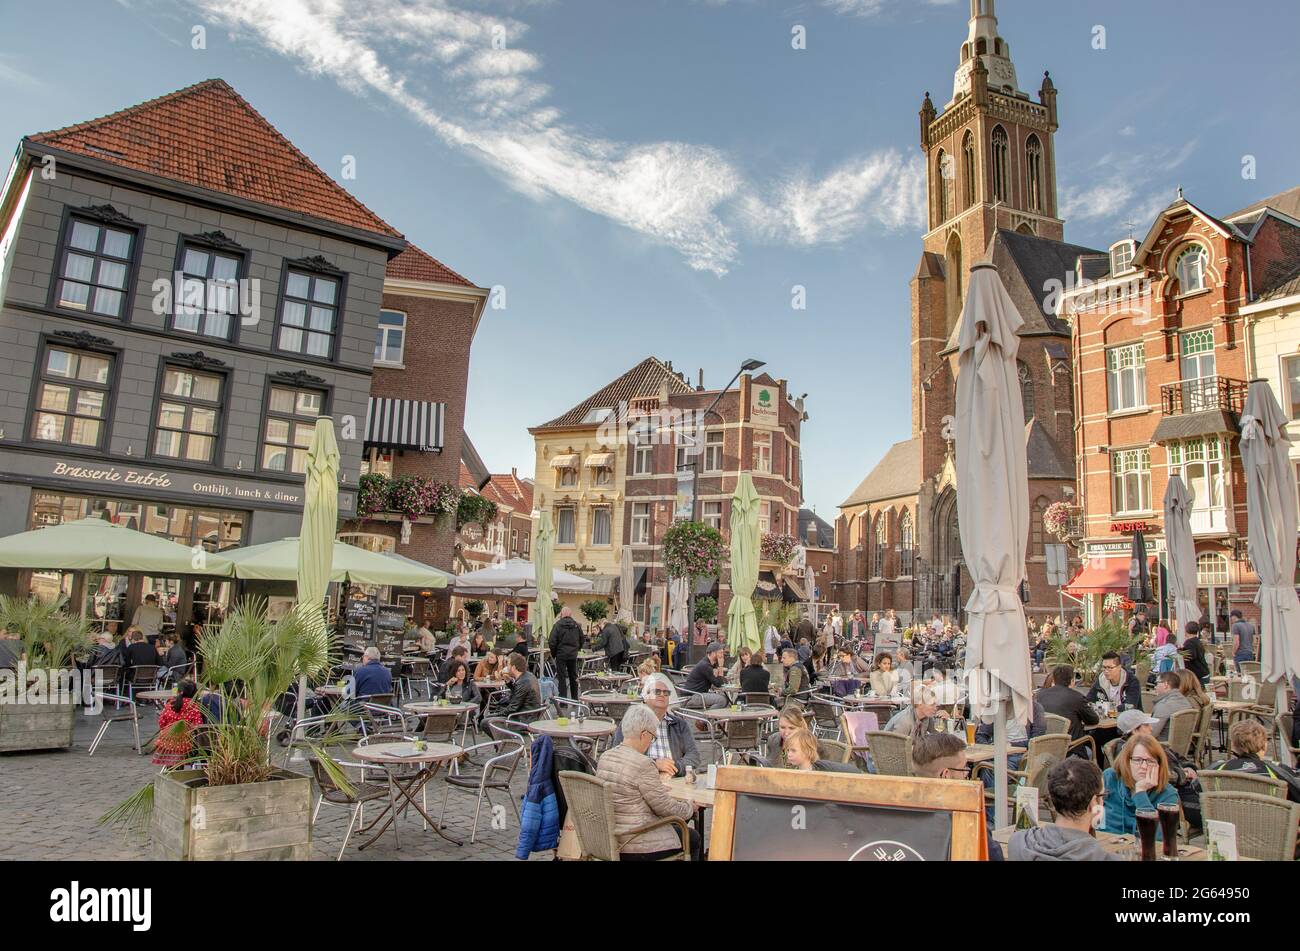 Roermond - Altstadt Foto de stock